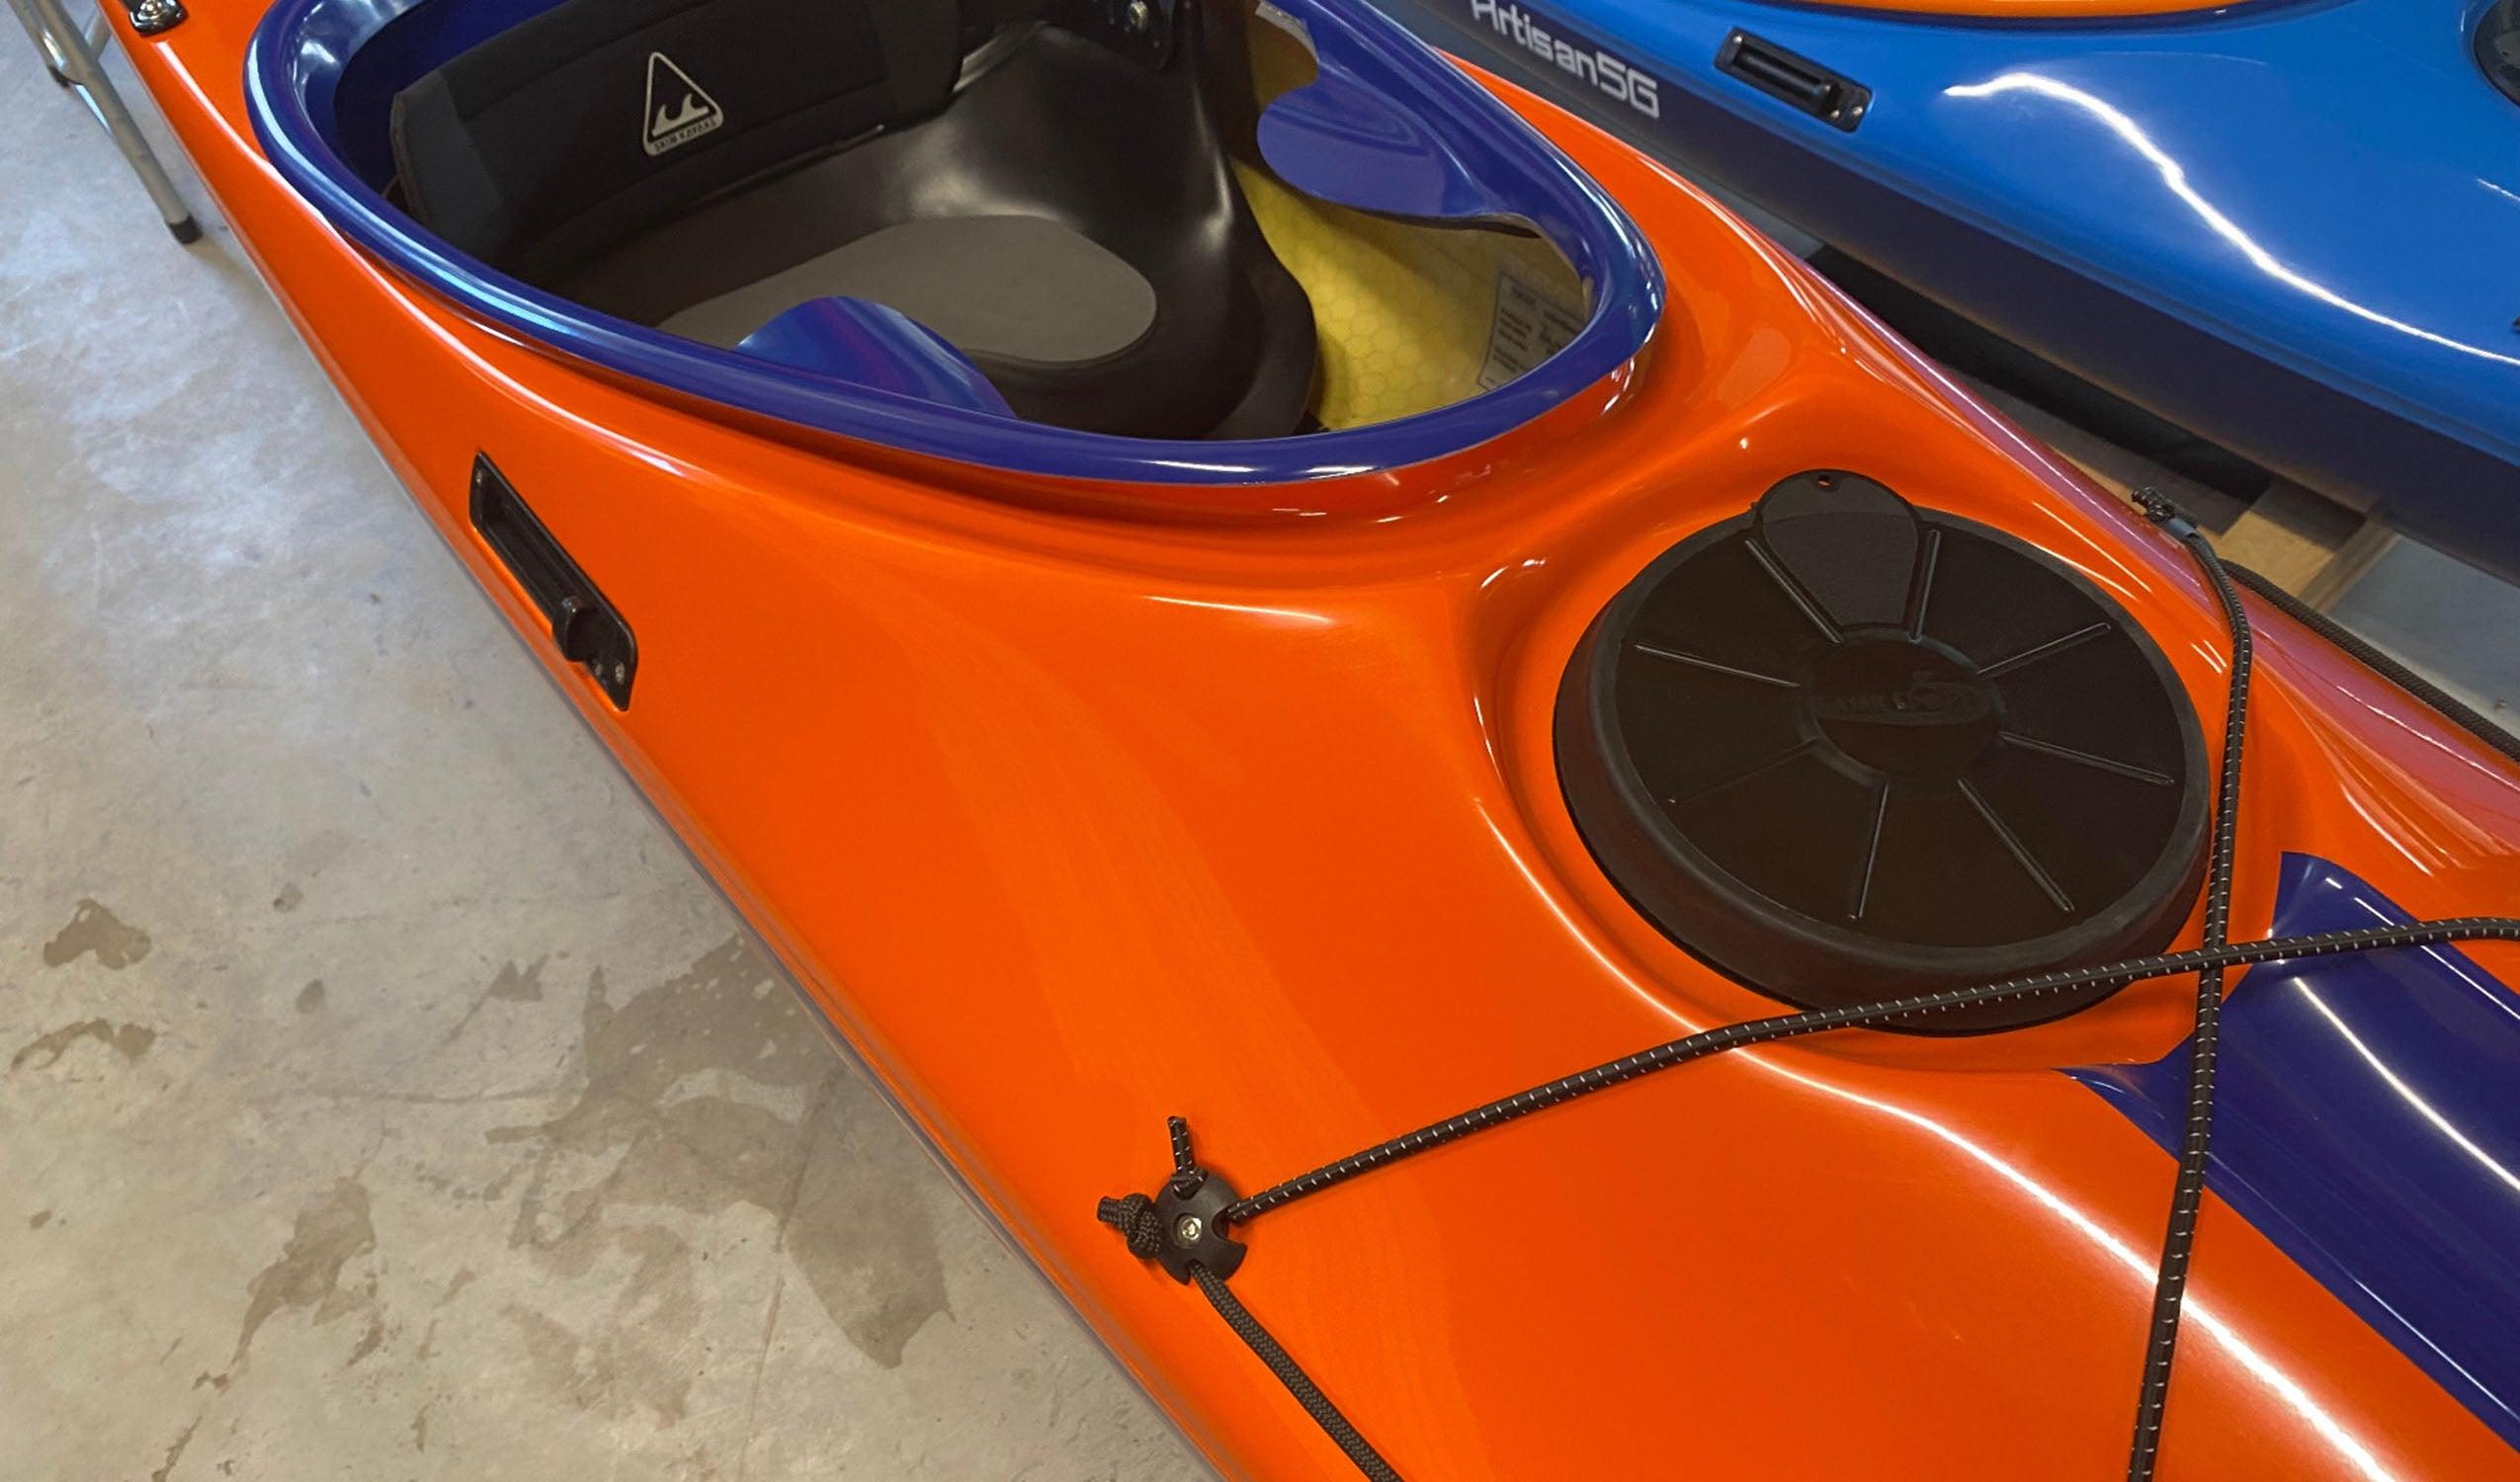 Produktbild von Kajak " Beaufort LV Rockhopper-orange blau " der Marke SKIM Kayaks für 4350.00 €. Erhältlich online bei Lite Venture ( www.liteventure.de )